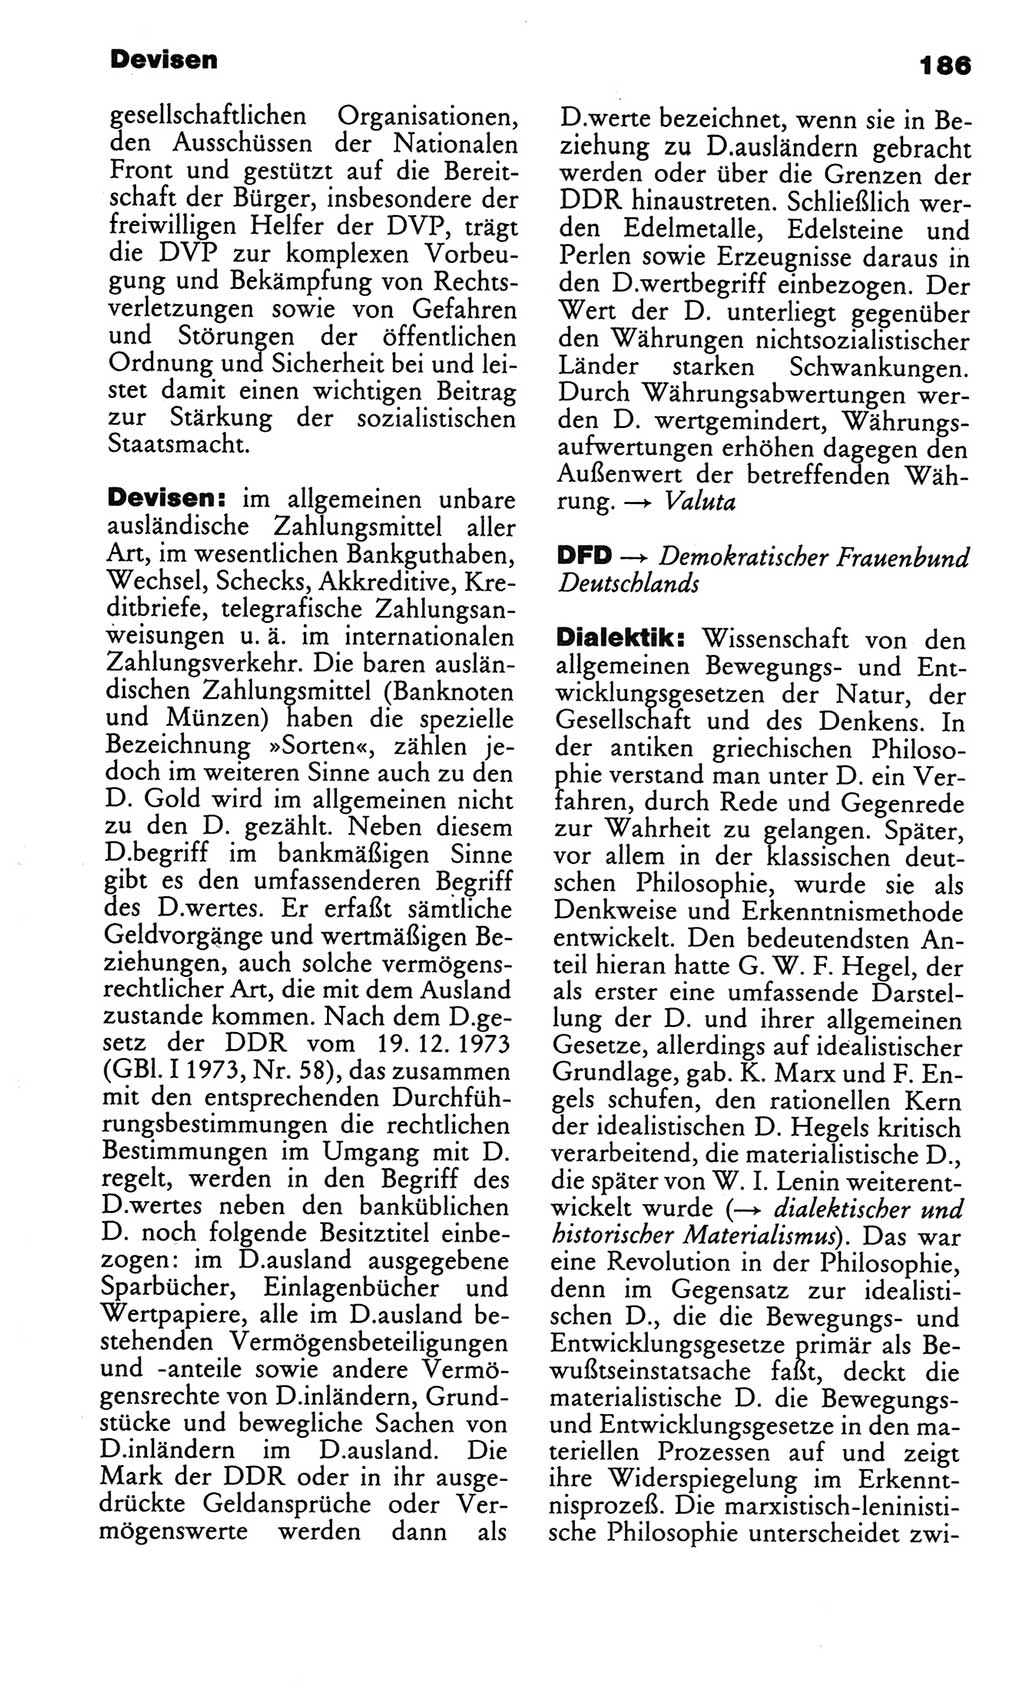 Kleines politisches Wörterbuch [Deutsche Demokratische Republik (DDR)] 1986, Seite 186 (Kl. pol. Wb. DDR 1986, S. 186)